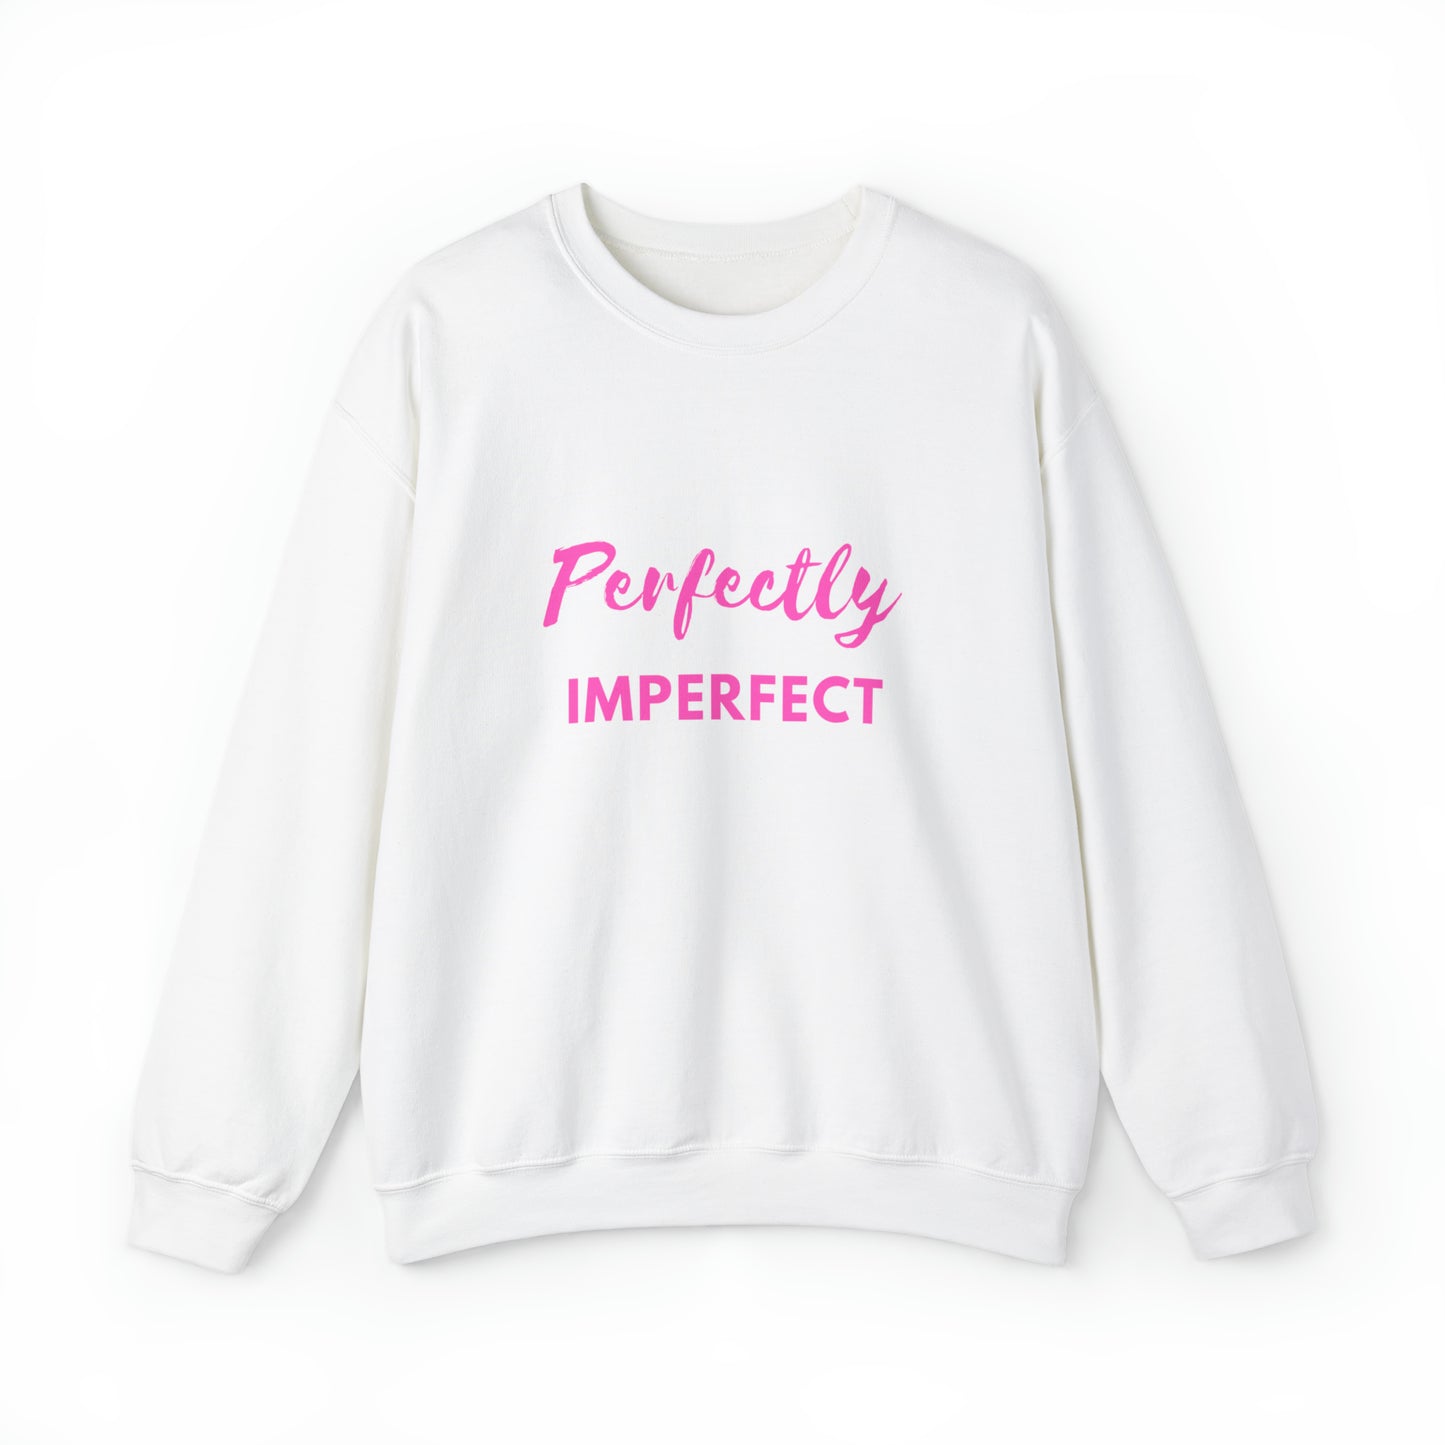 "Perfectly Imperfect" Sweatshirt